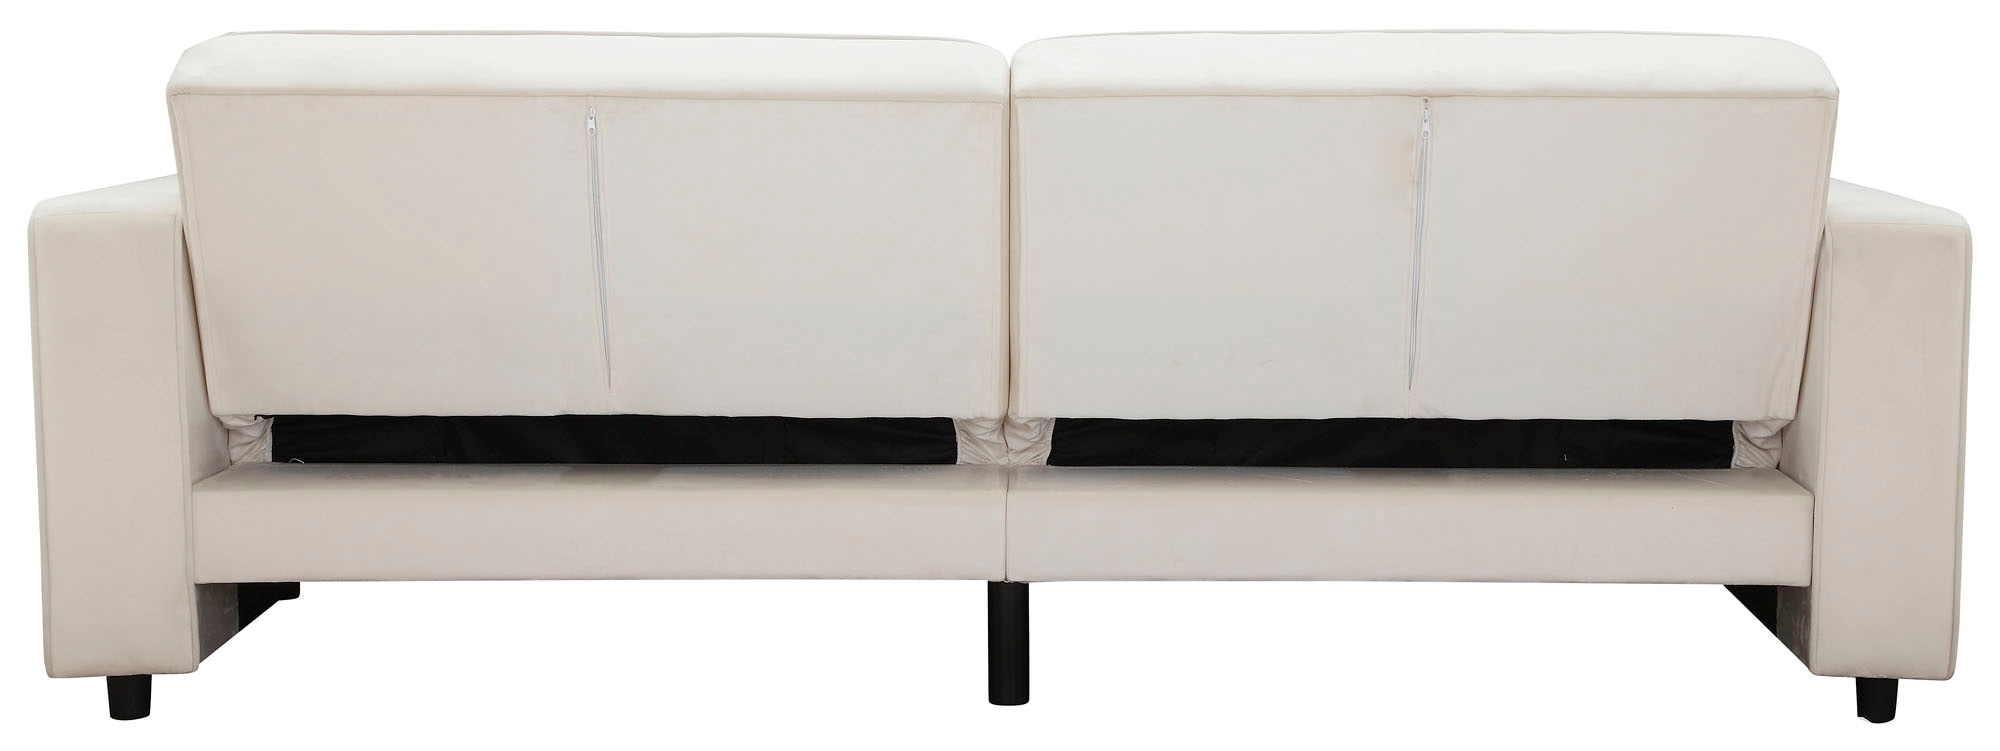 Dorel Home 3-Sitzer »Allie Schlafsofa 225 cm«, Bett-Funktion (108/190cm), trendiger Cord o. pflegeleichter Velours